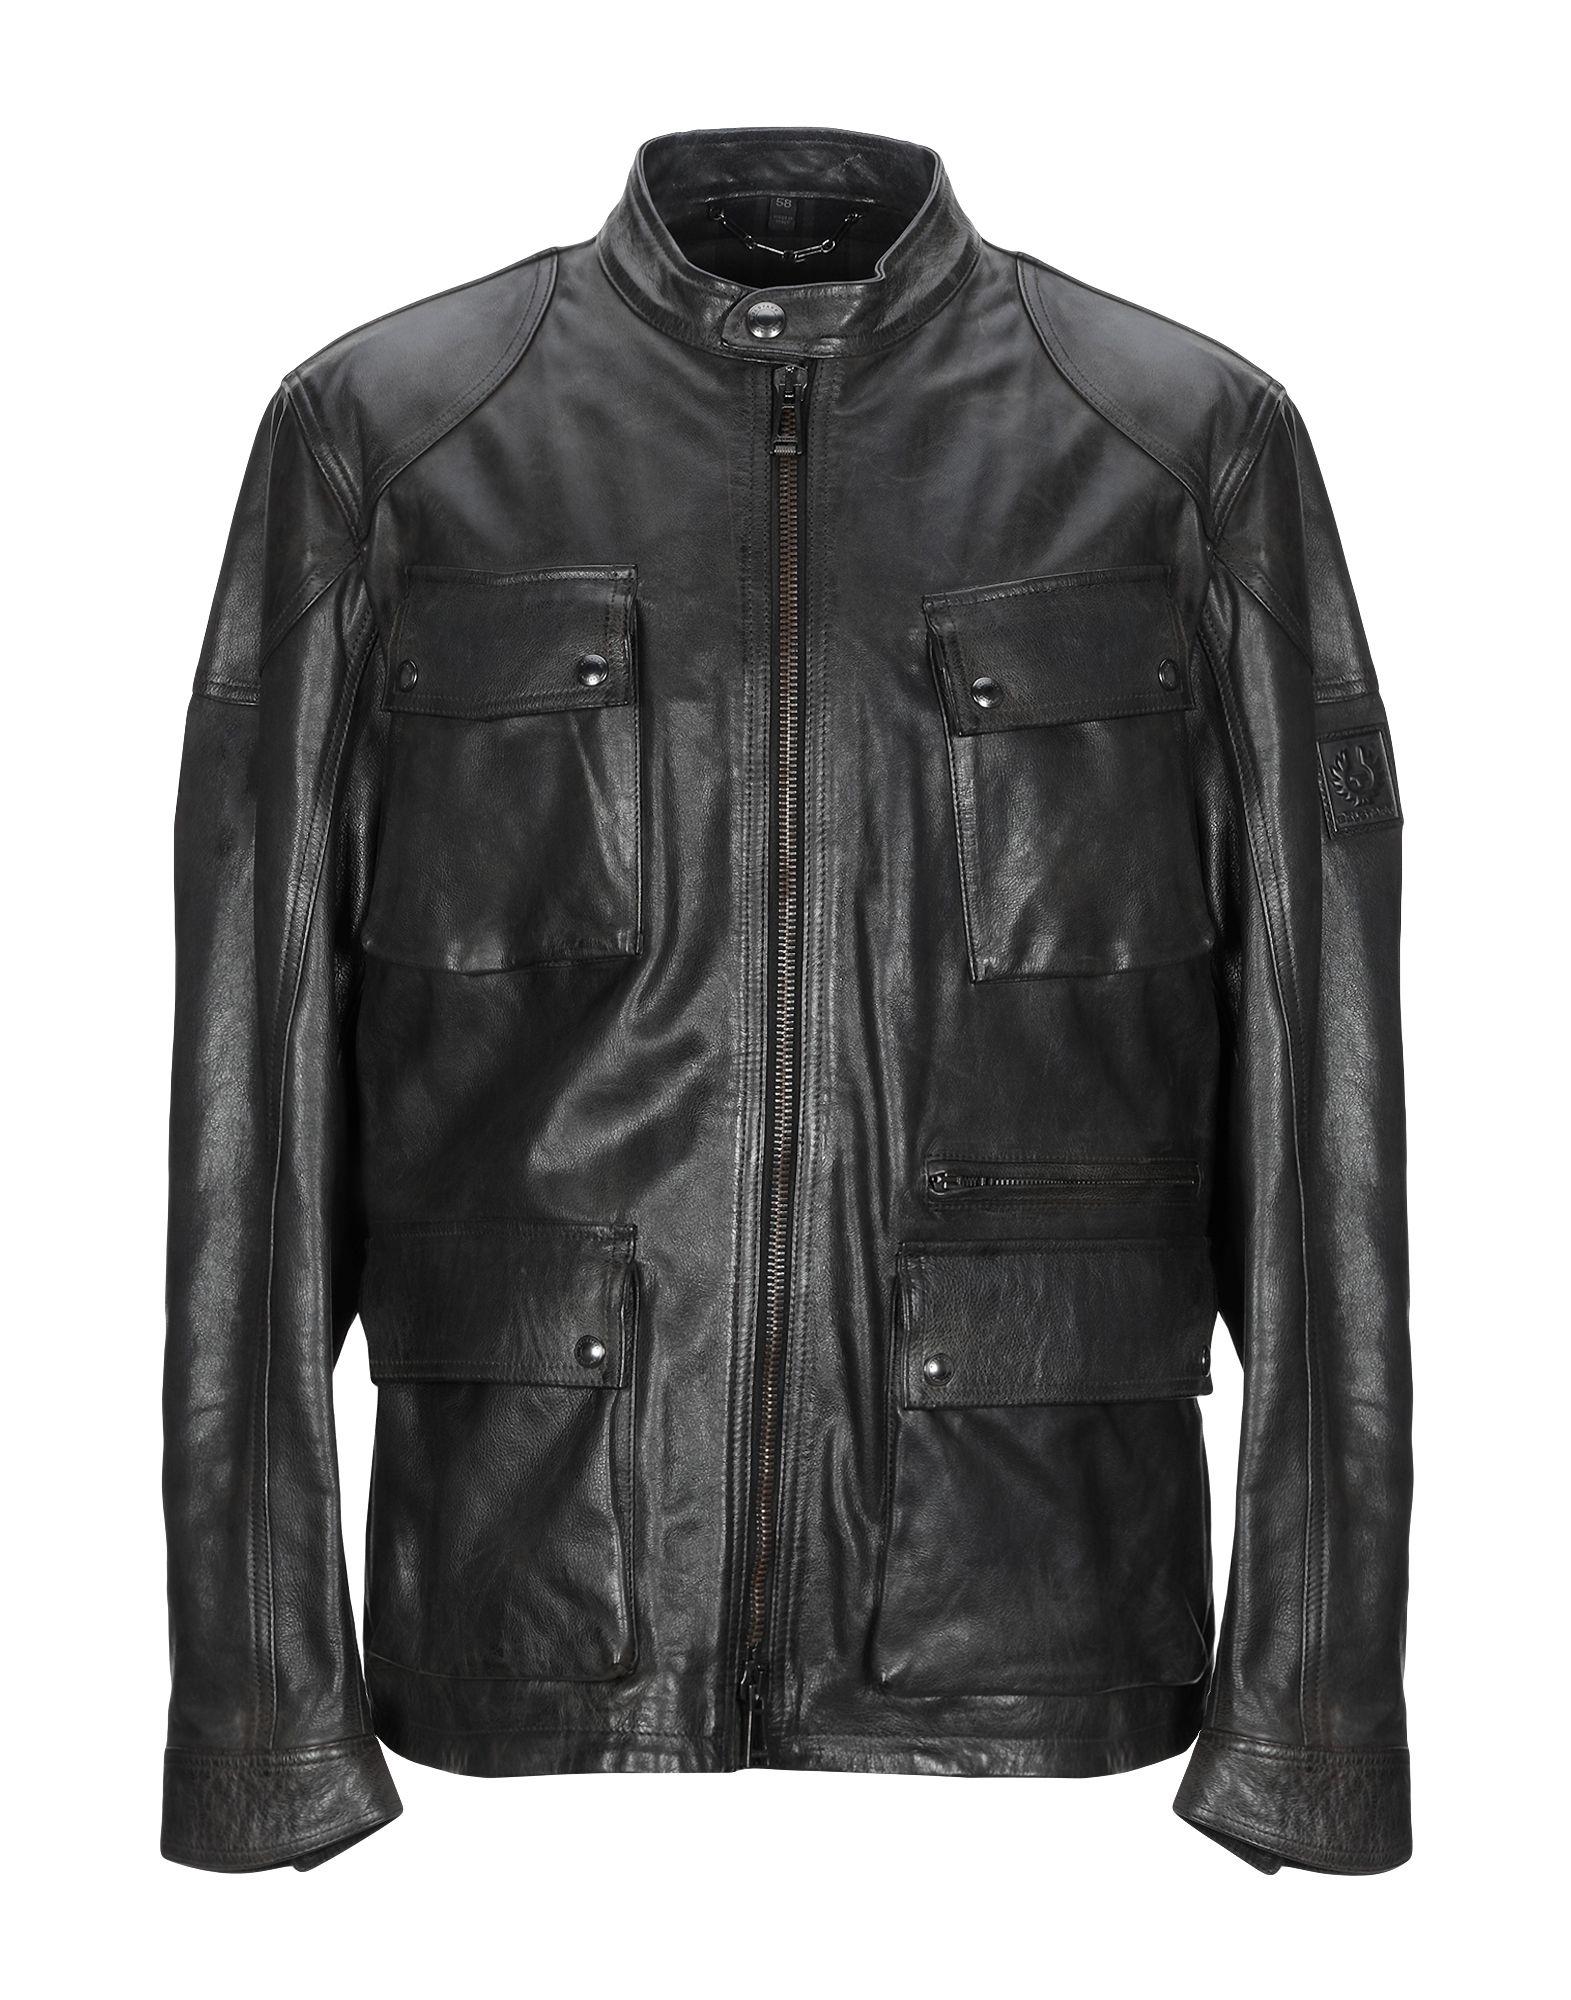 Belstaff Leather Jacket in Steel Grey (Gray) for Men - Lyst